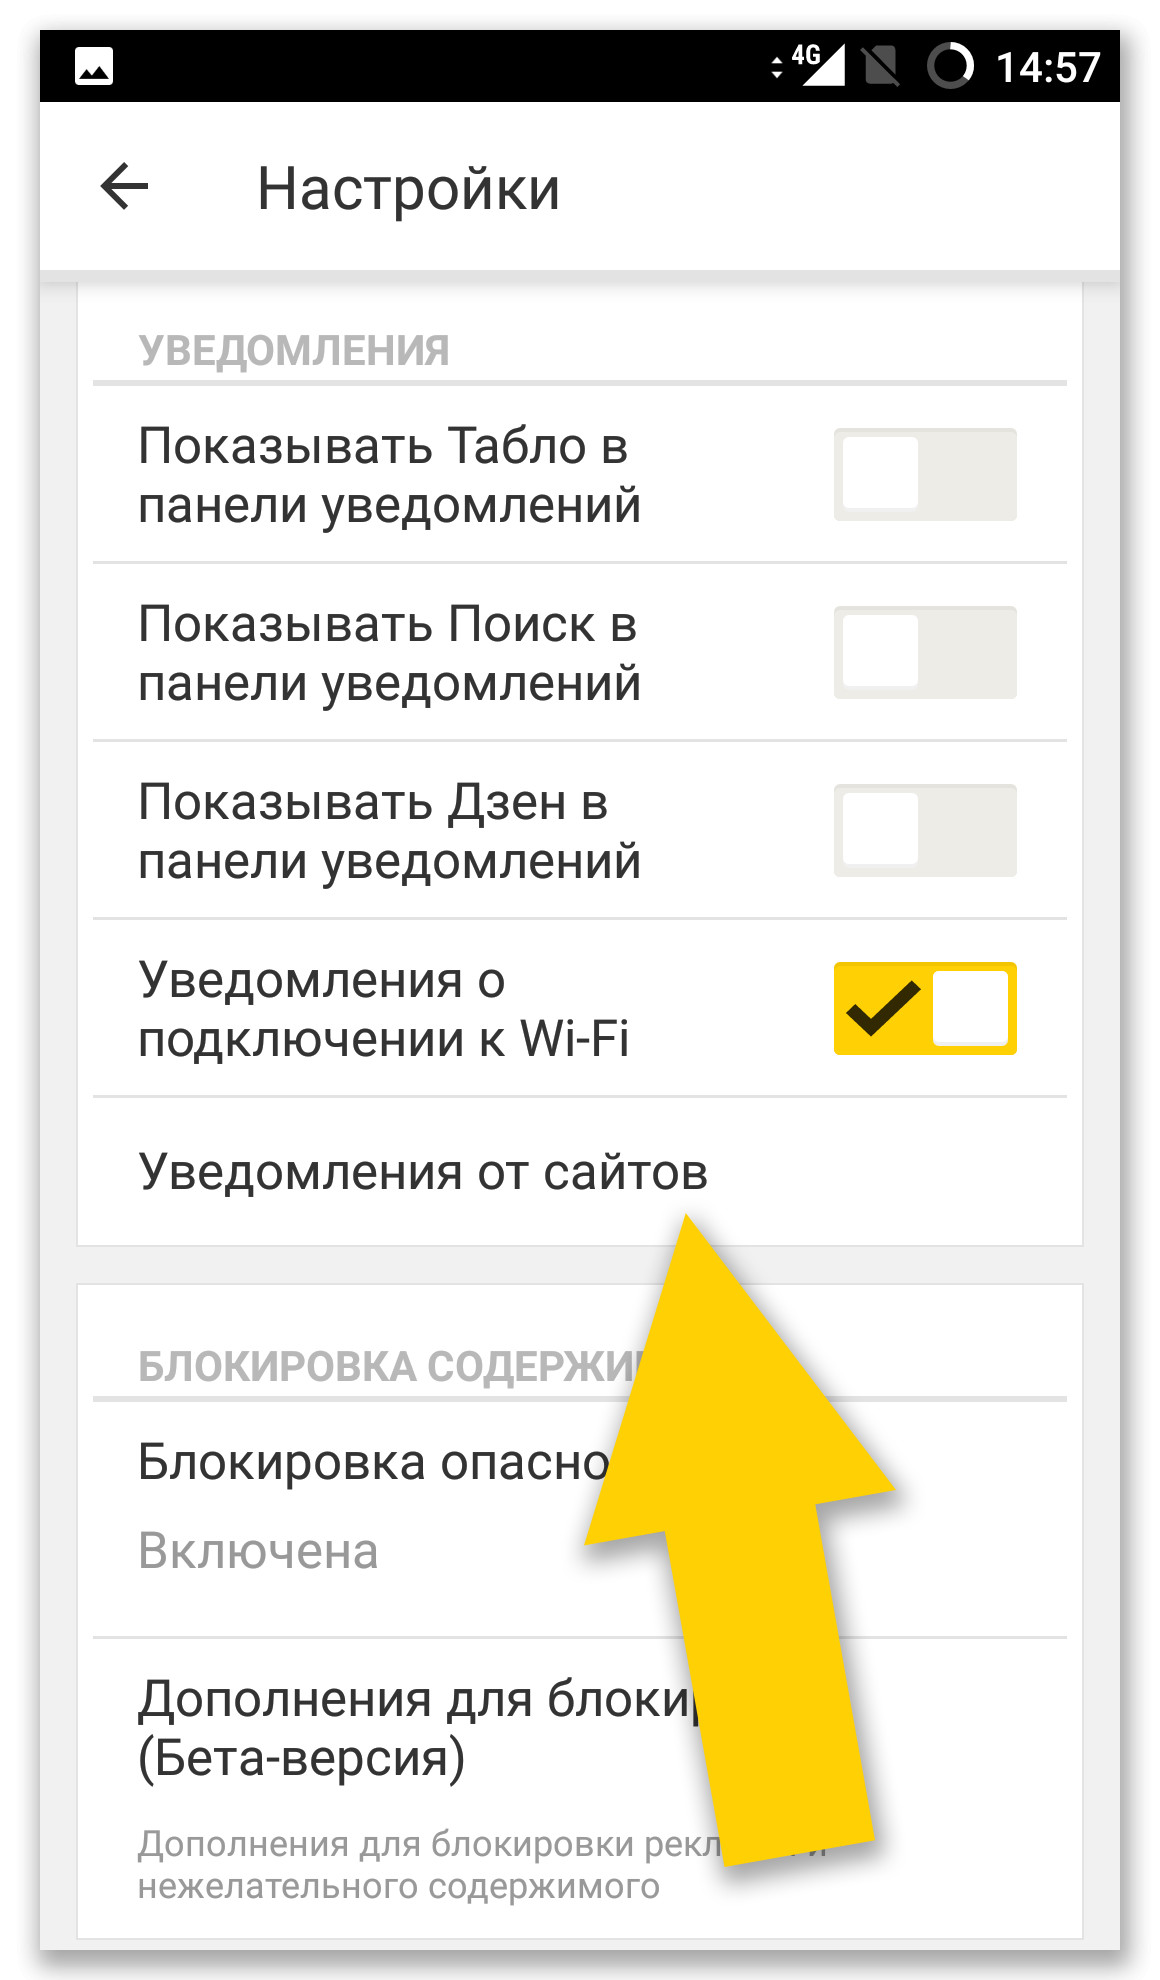 Как убрать пуш уведомления. Уведомление от Яндекса. Как отключить уведомления в Яндексе. Отключить уведомления от Яндекса.